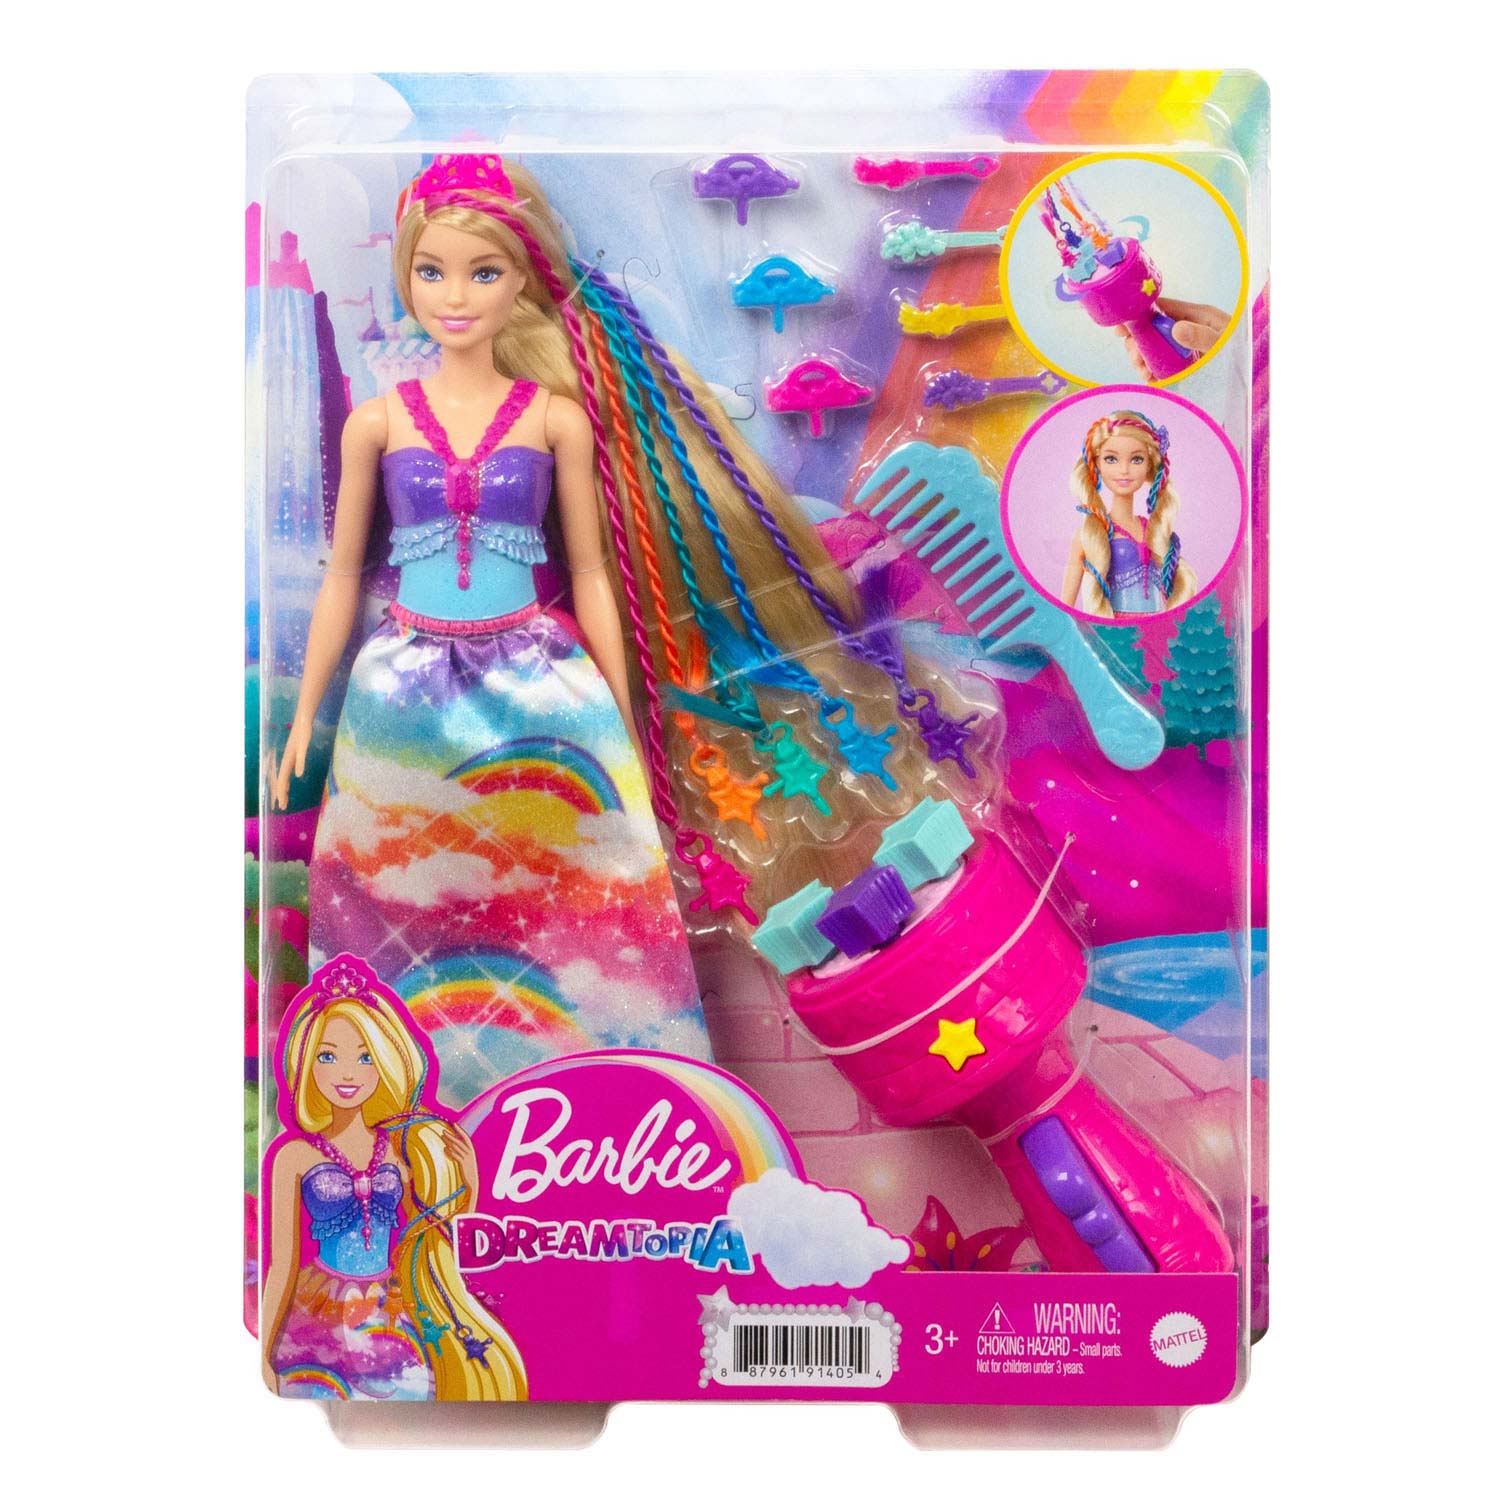 Barbie Dreamtopia Haarpflegepuppe und Zubehör